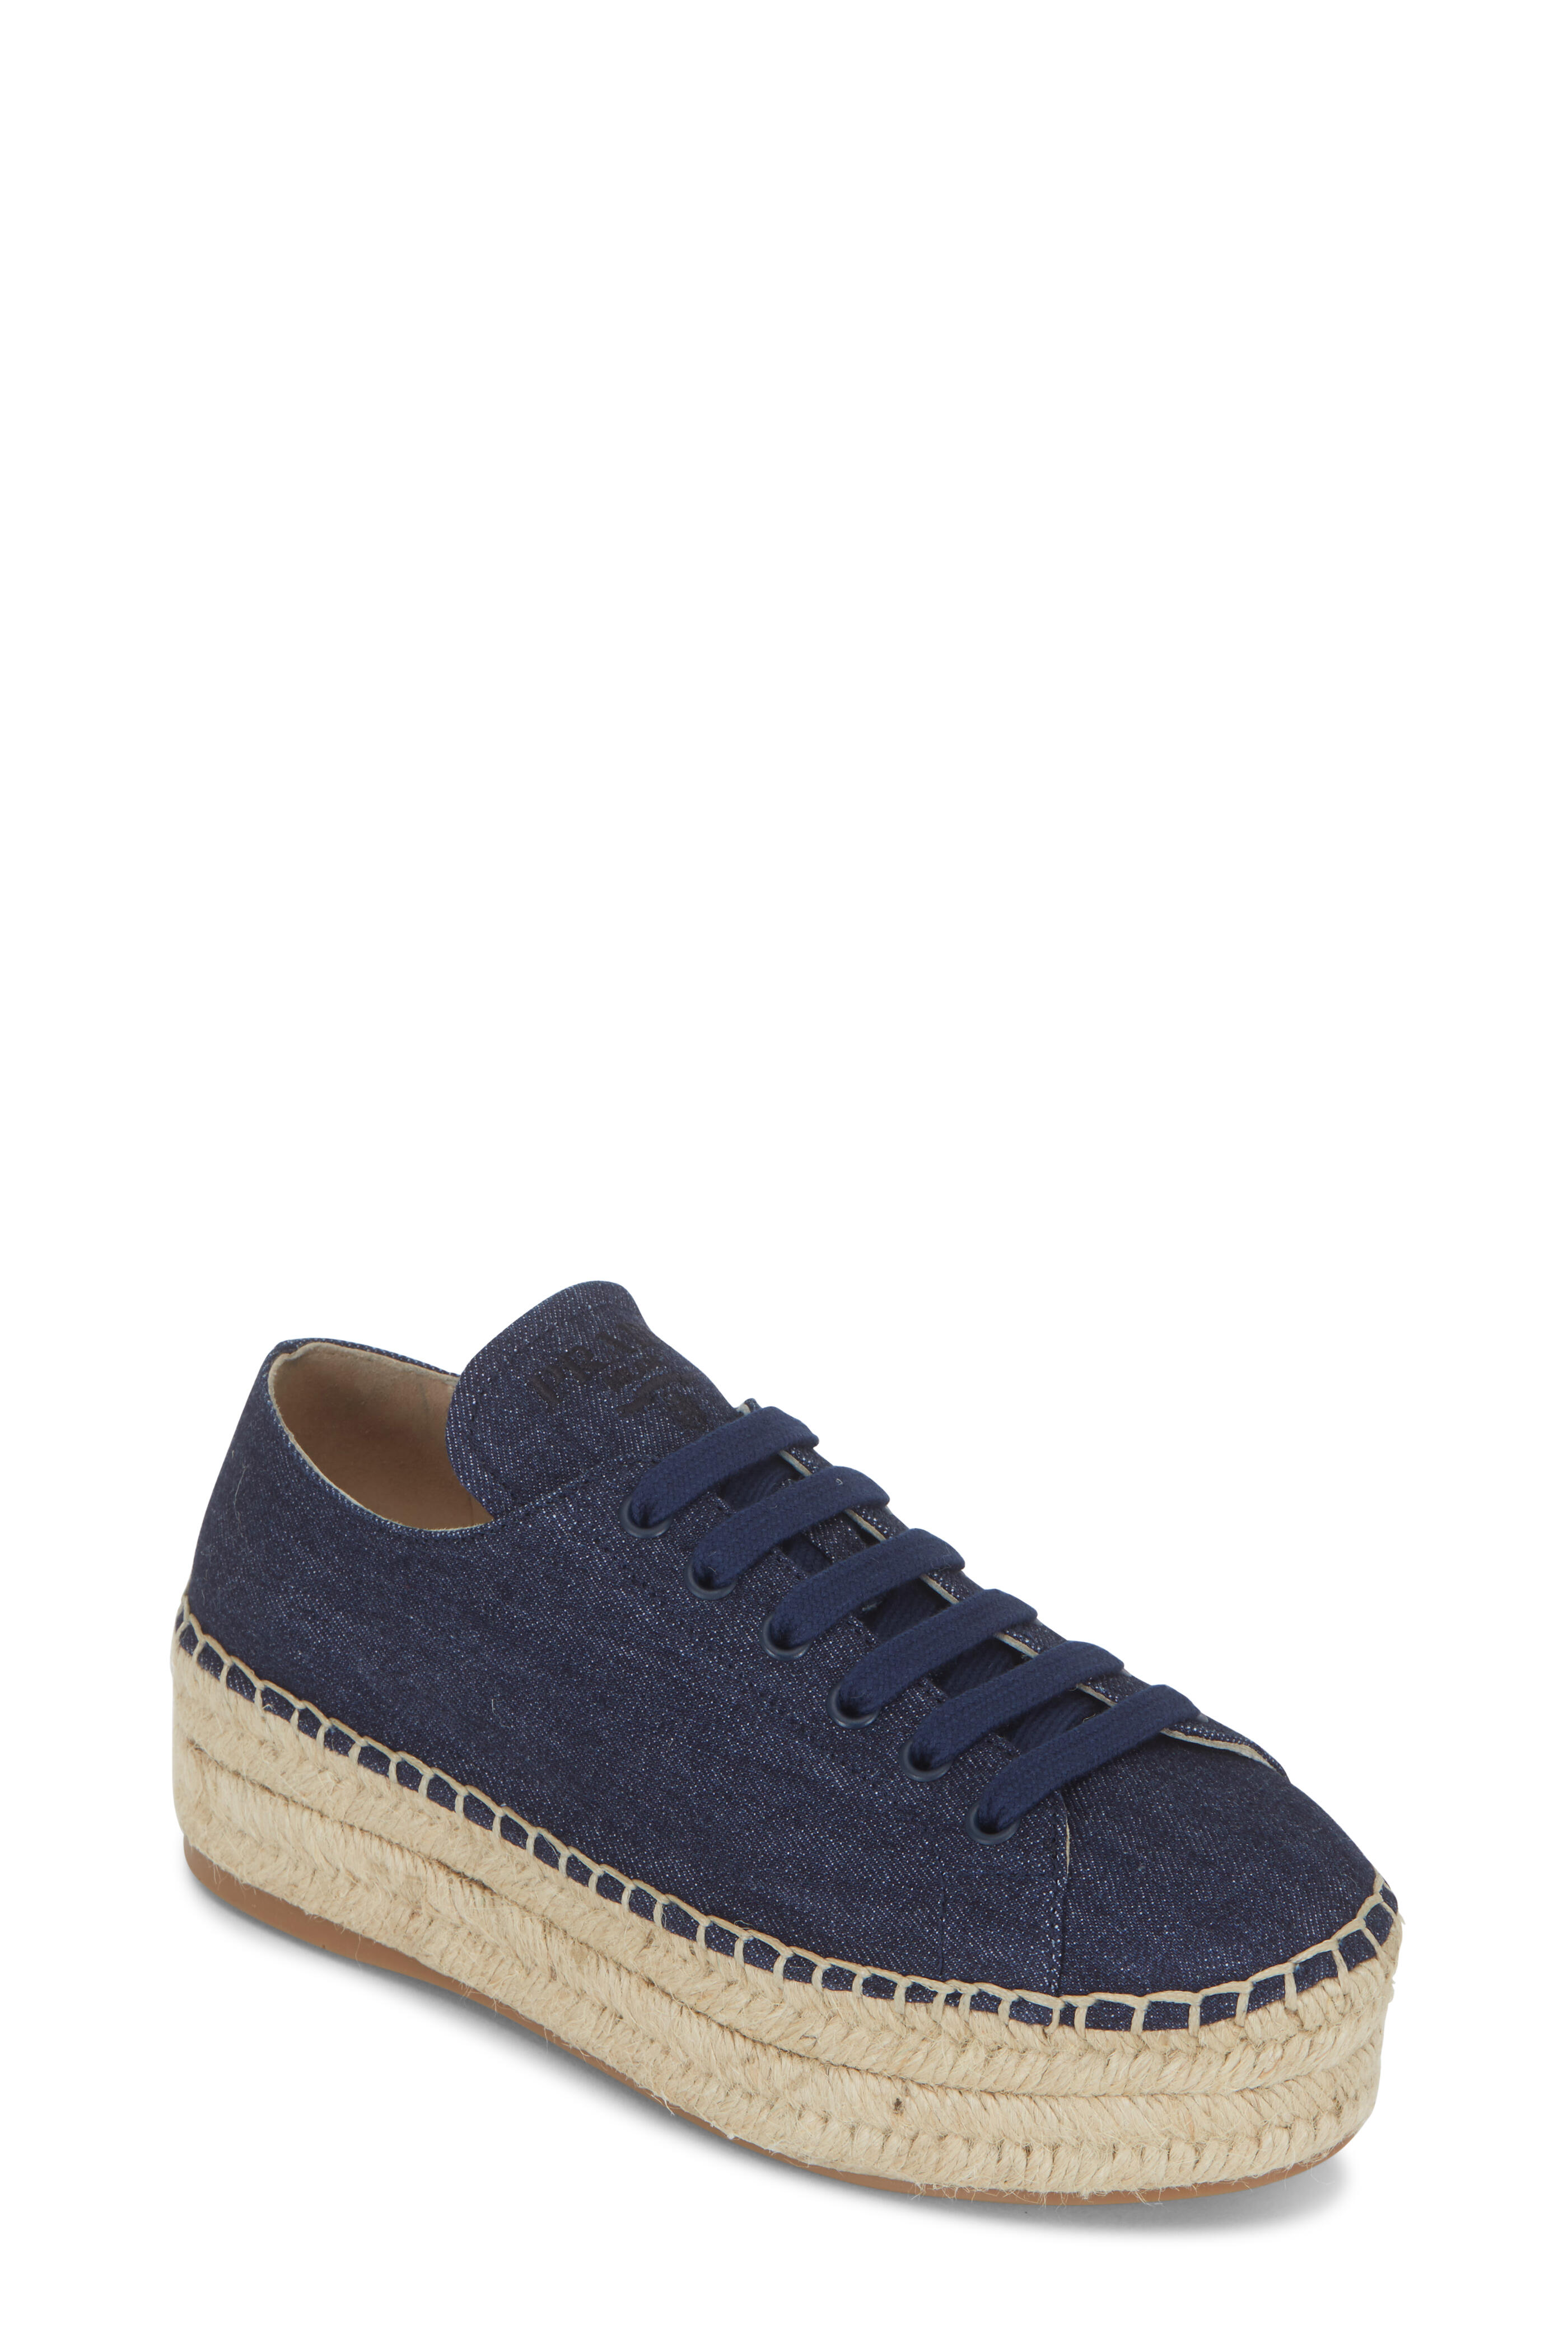 Prada - Blue Denim Espadrille Wedge Sneaker | Mitchell Stores